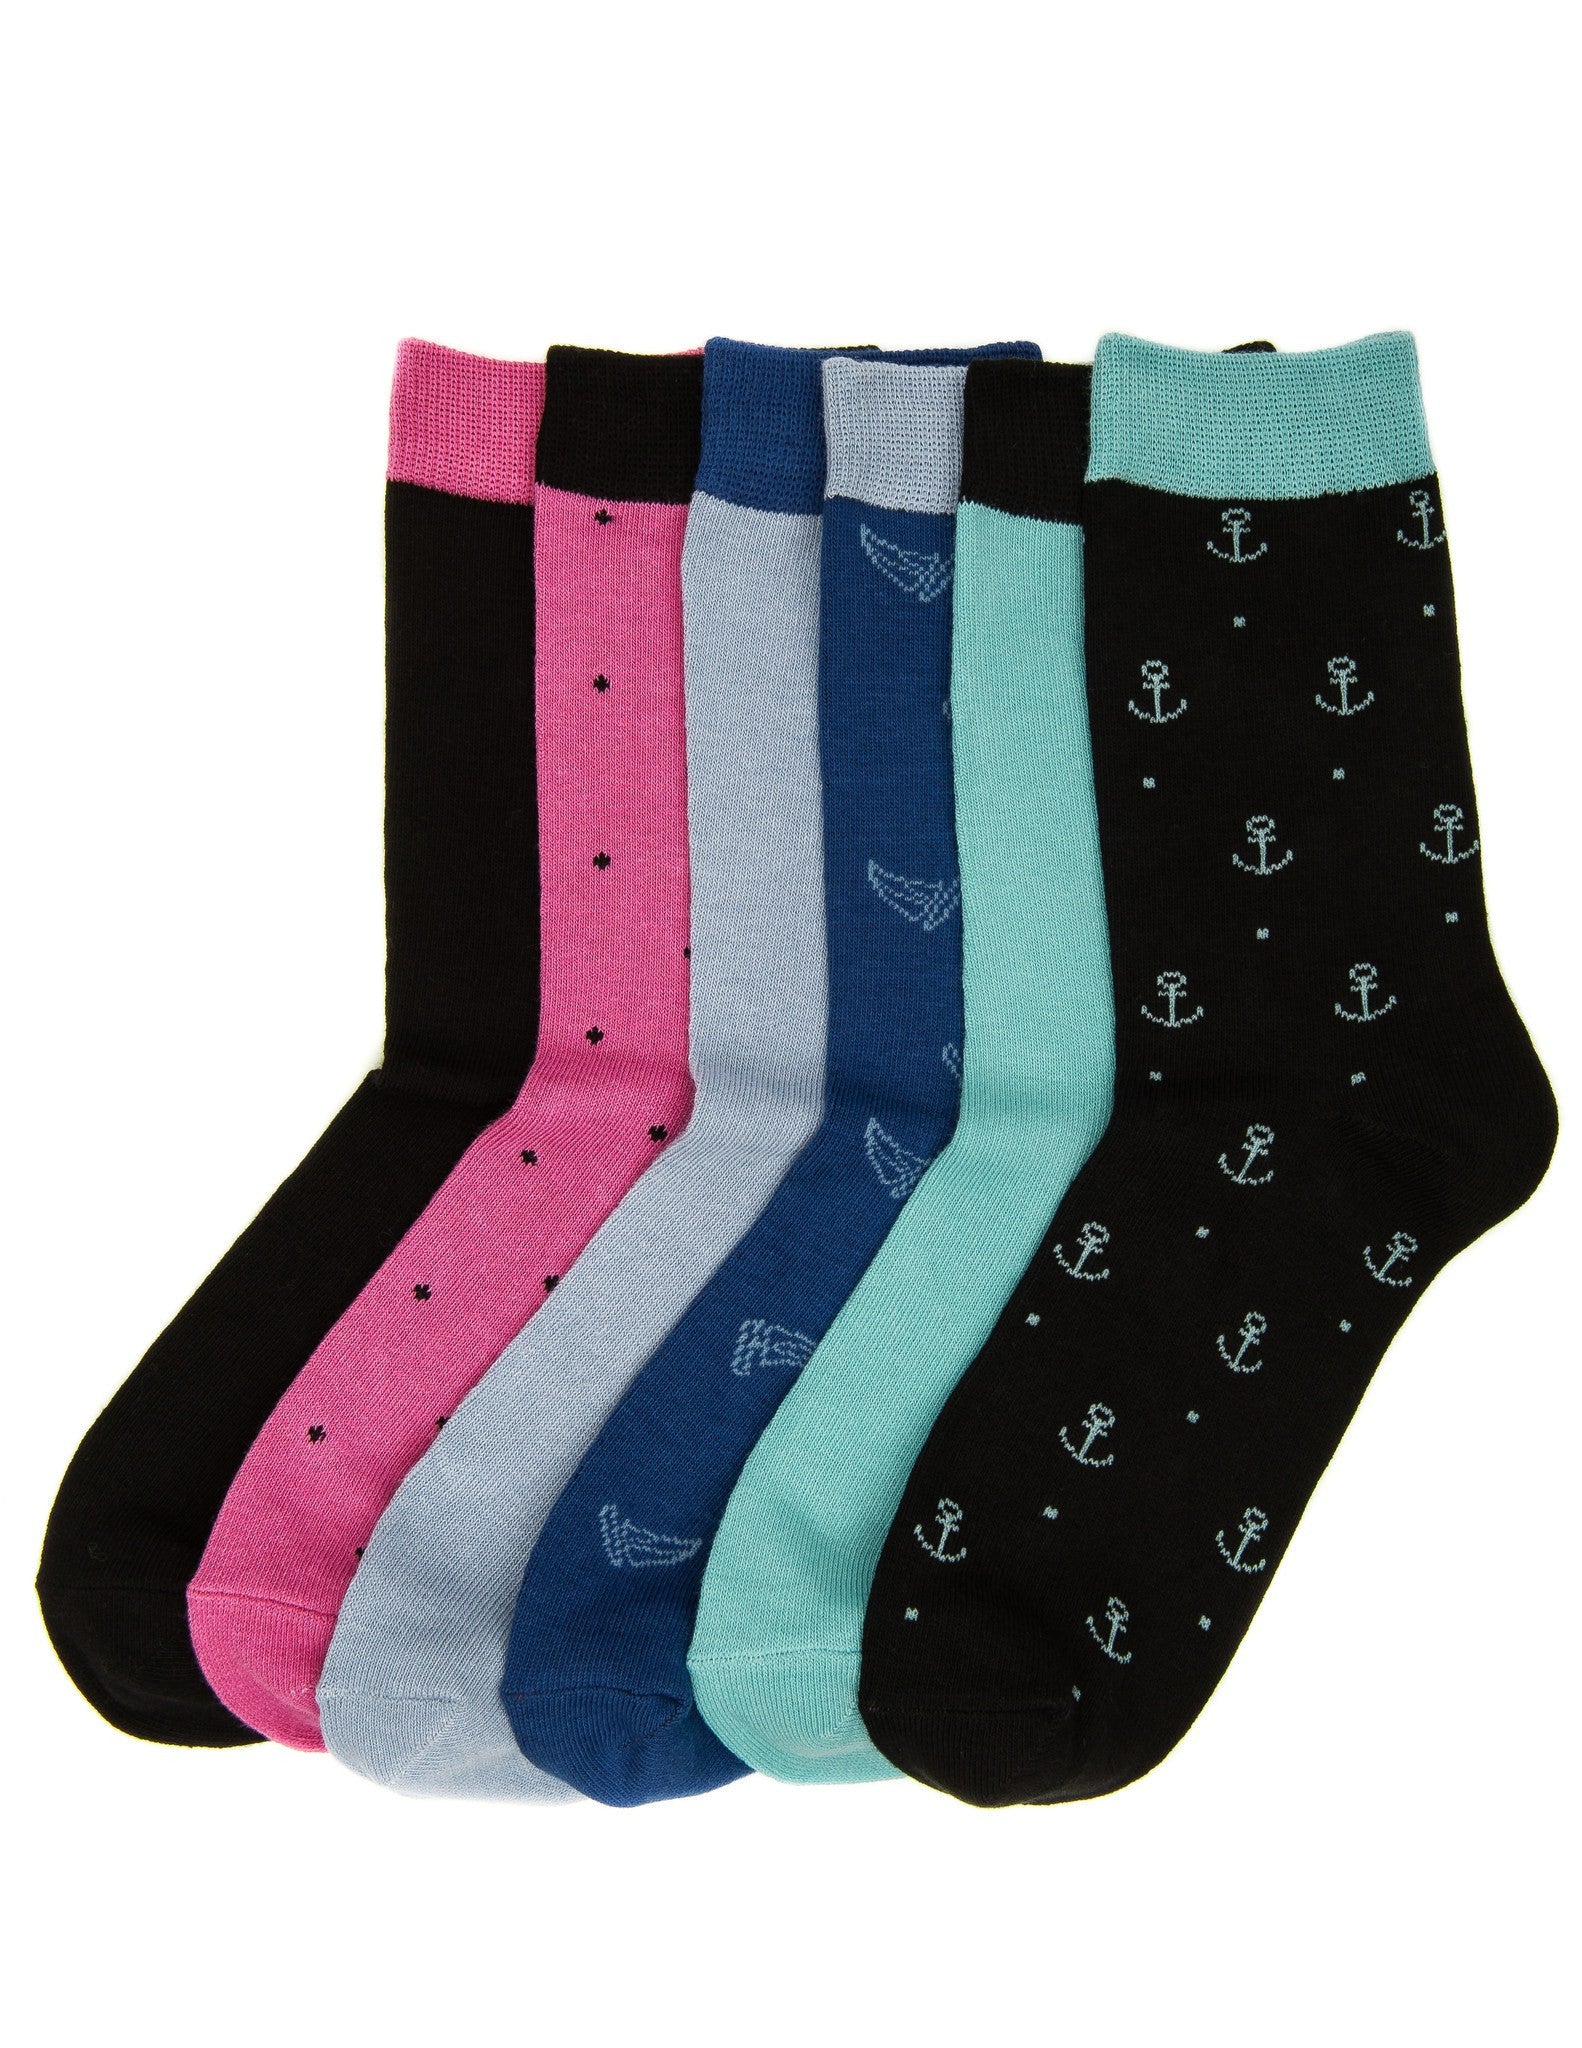 Women's Combed Cotton Premium Crew Socks